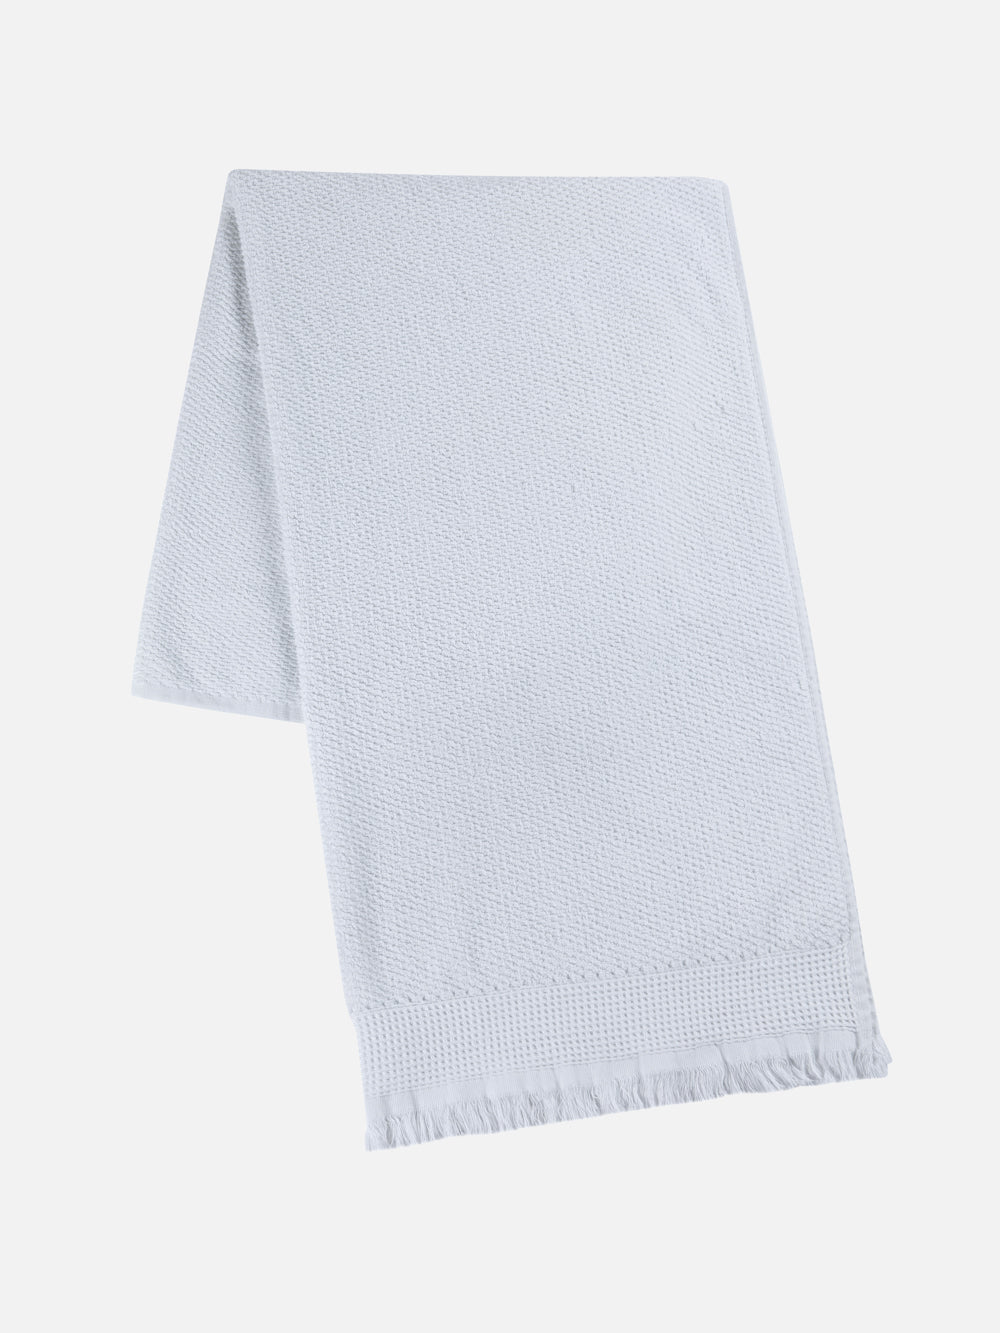 Relex Piqu Bath Towel